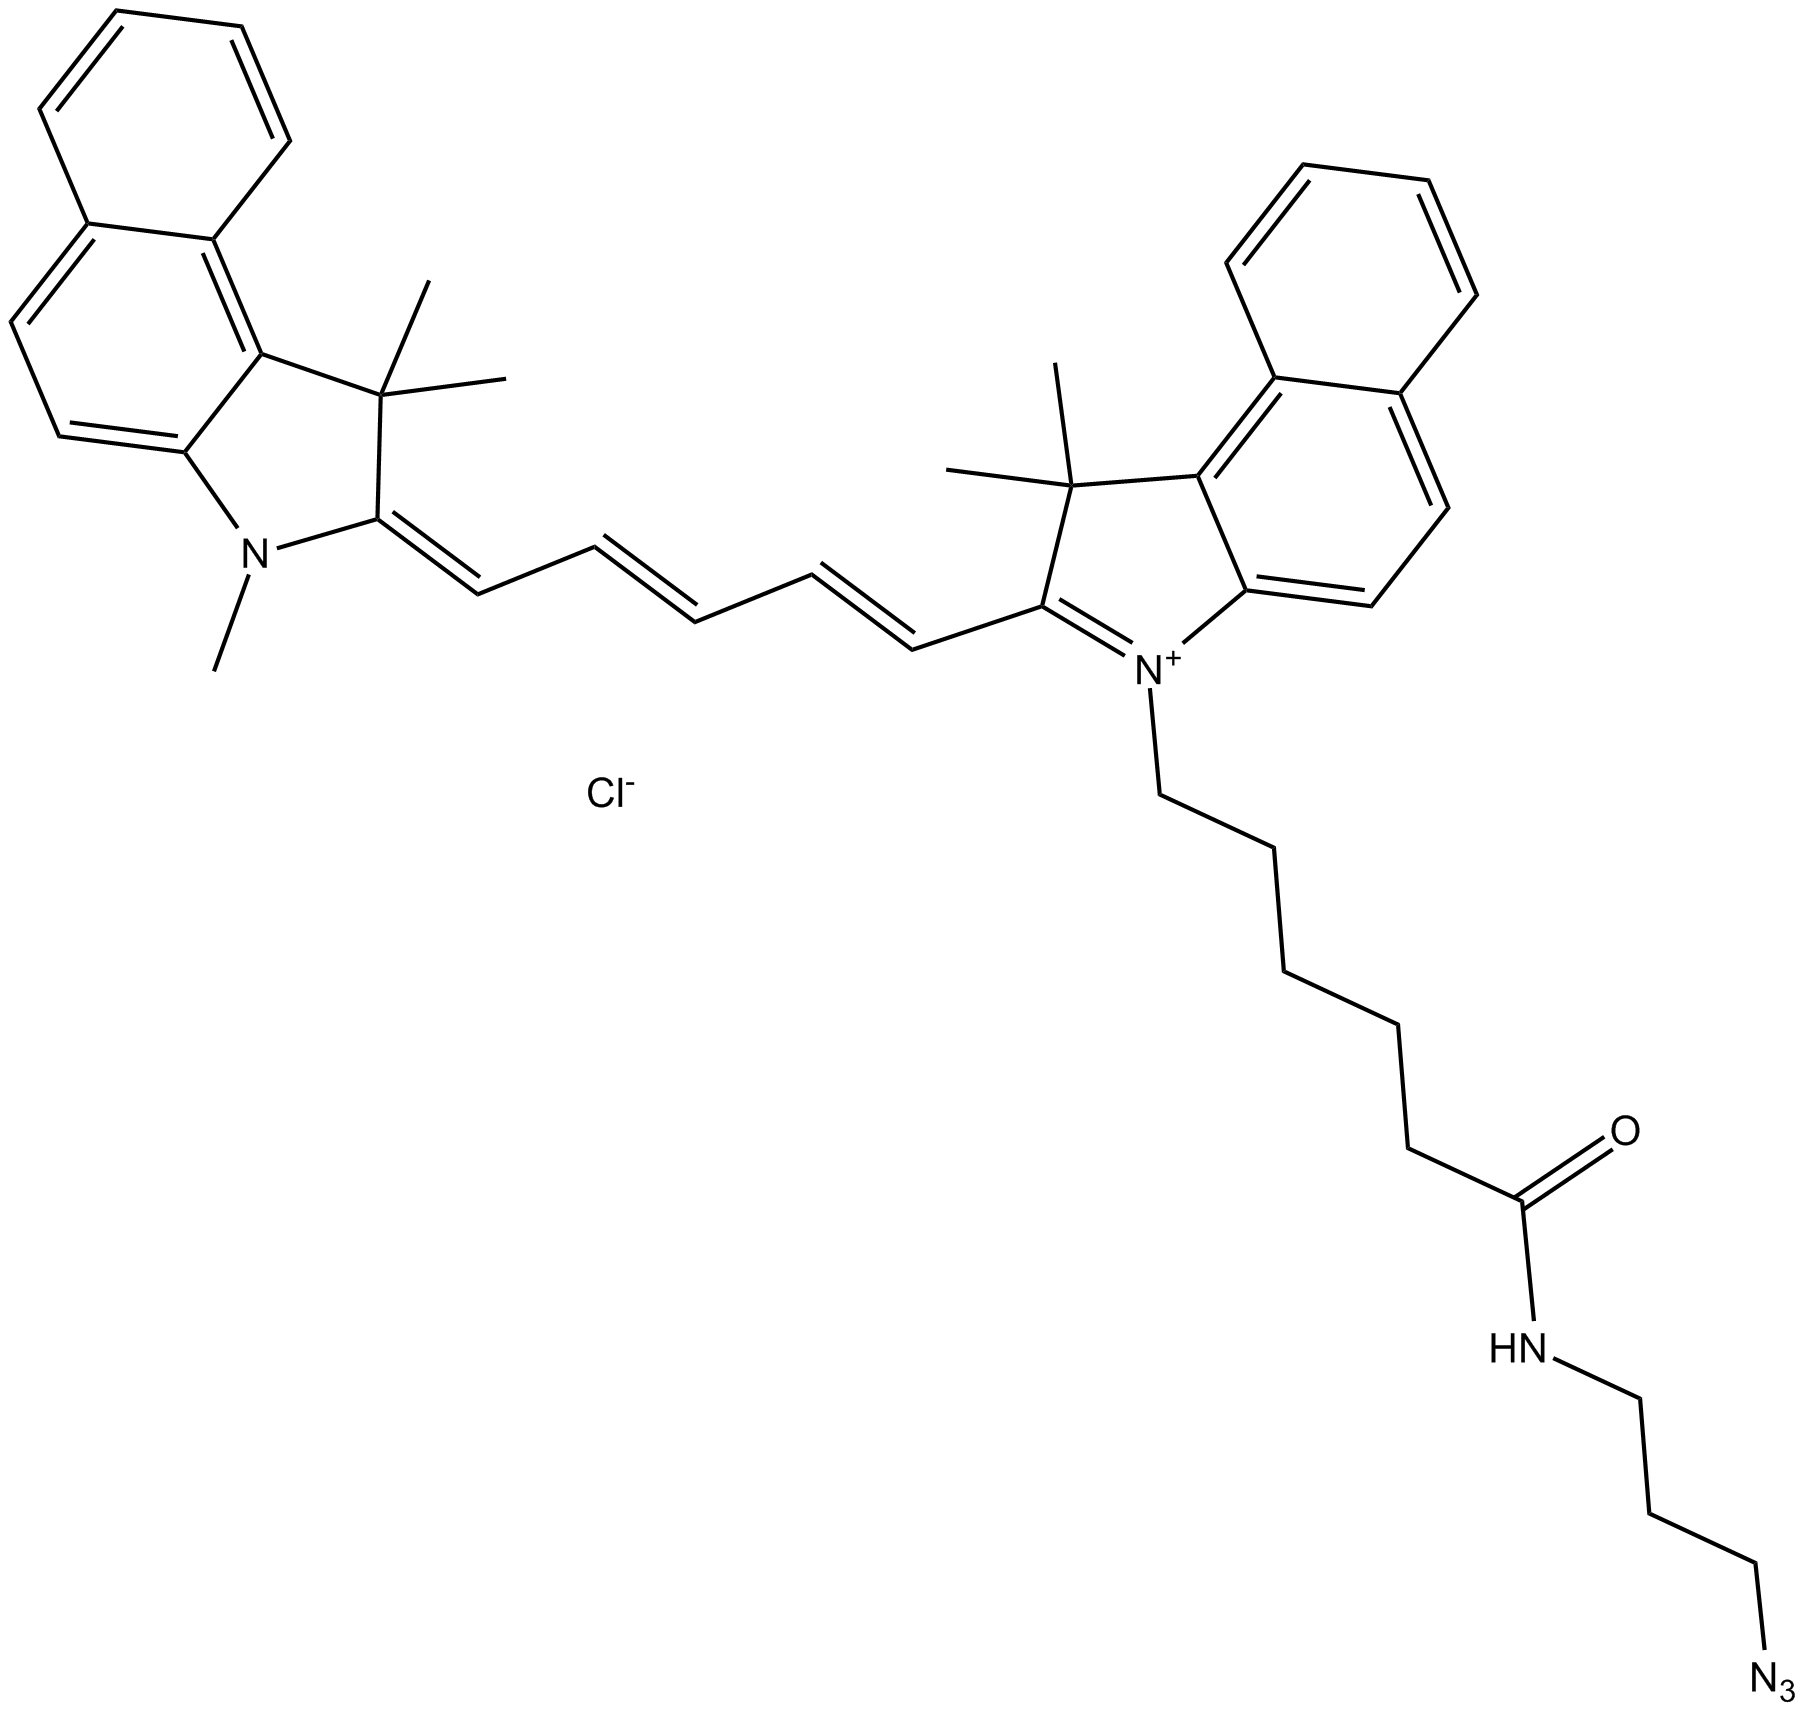 Cy5.5 azide (non-sulfonated)